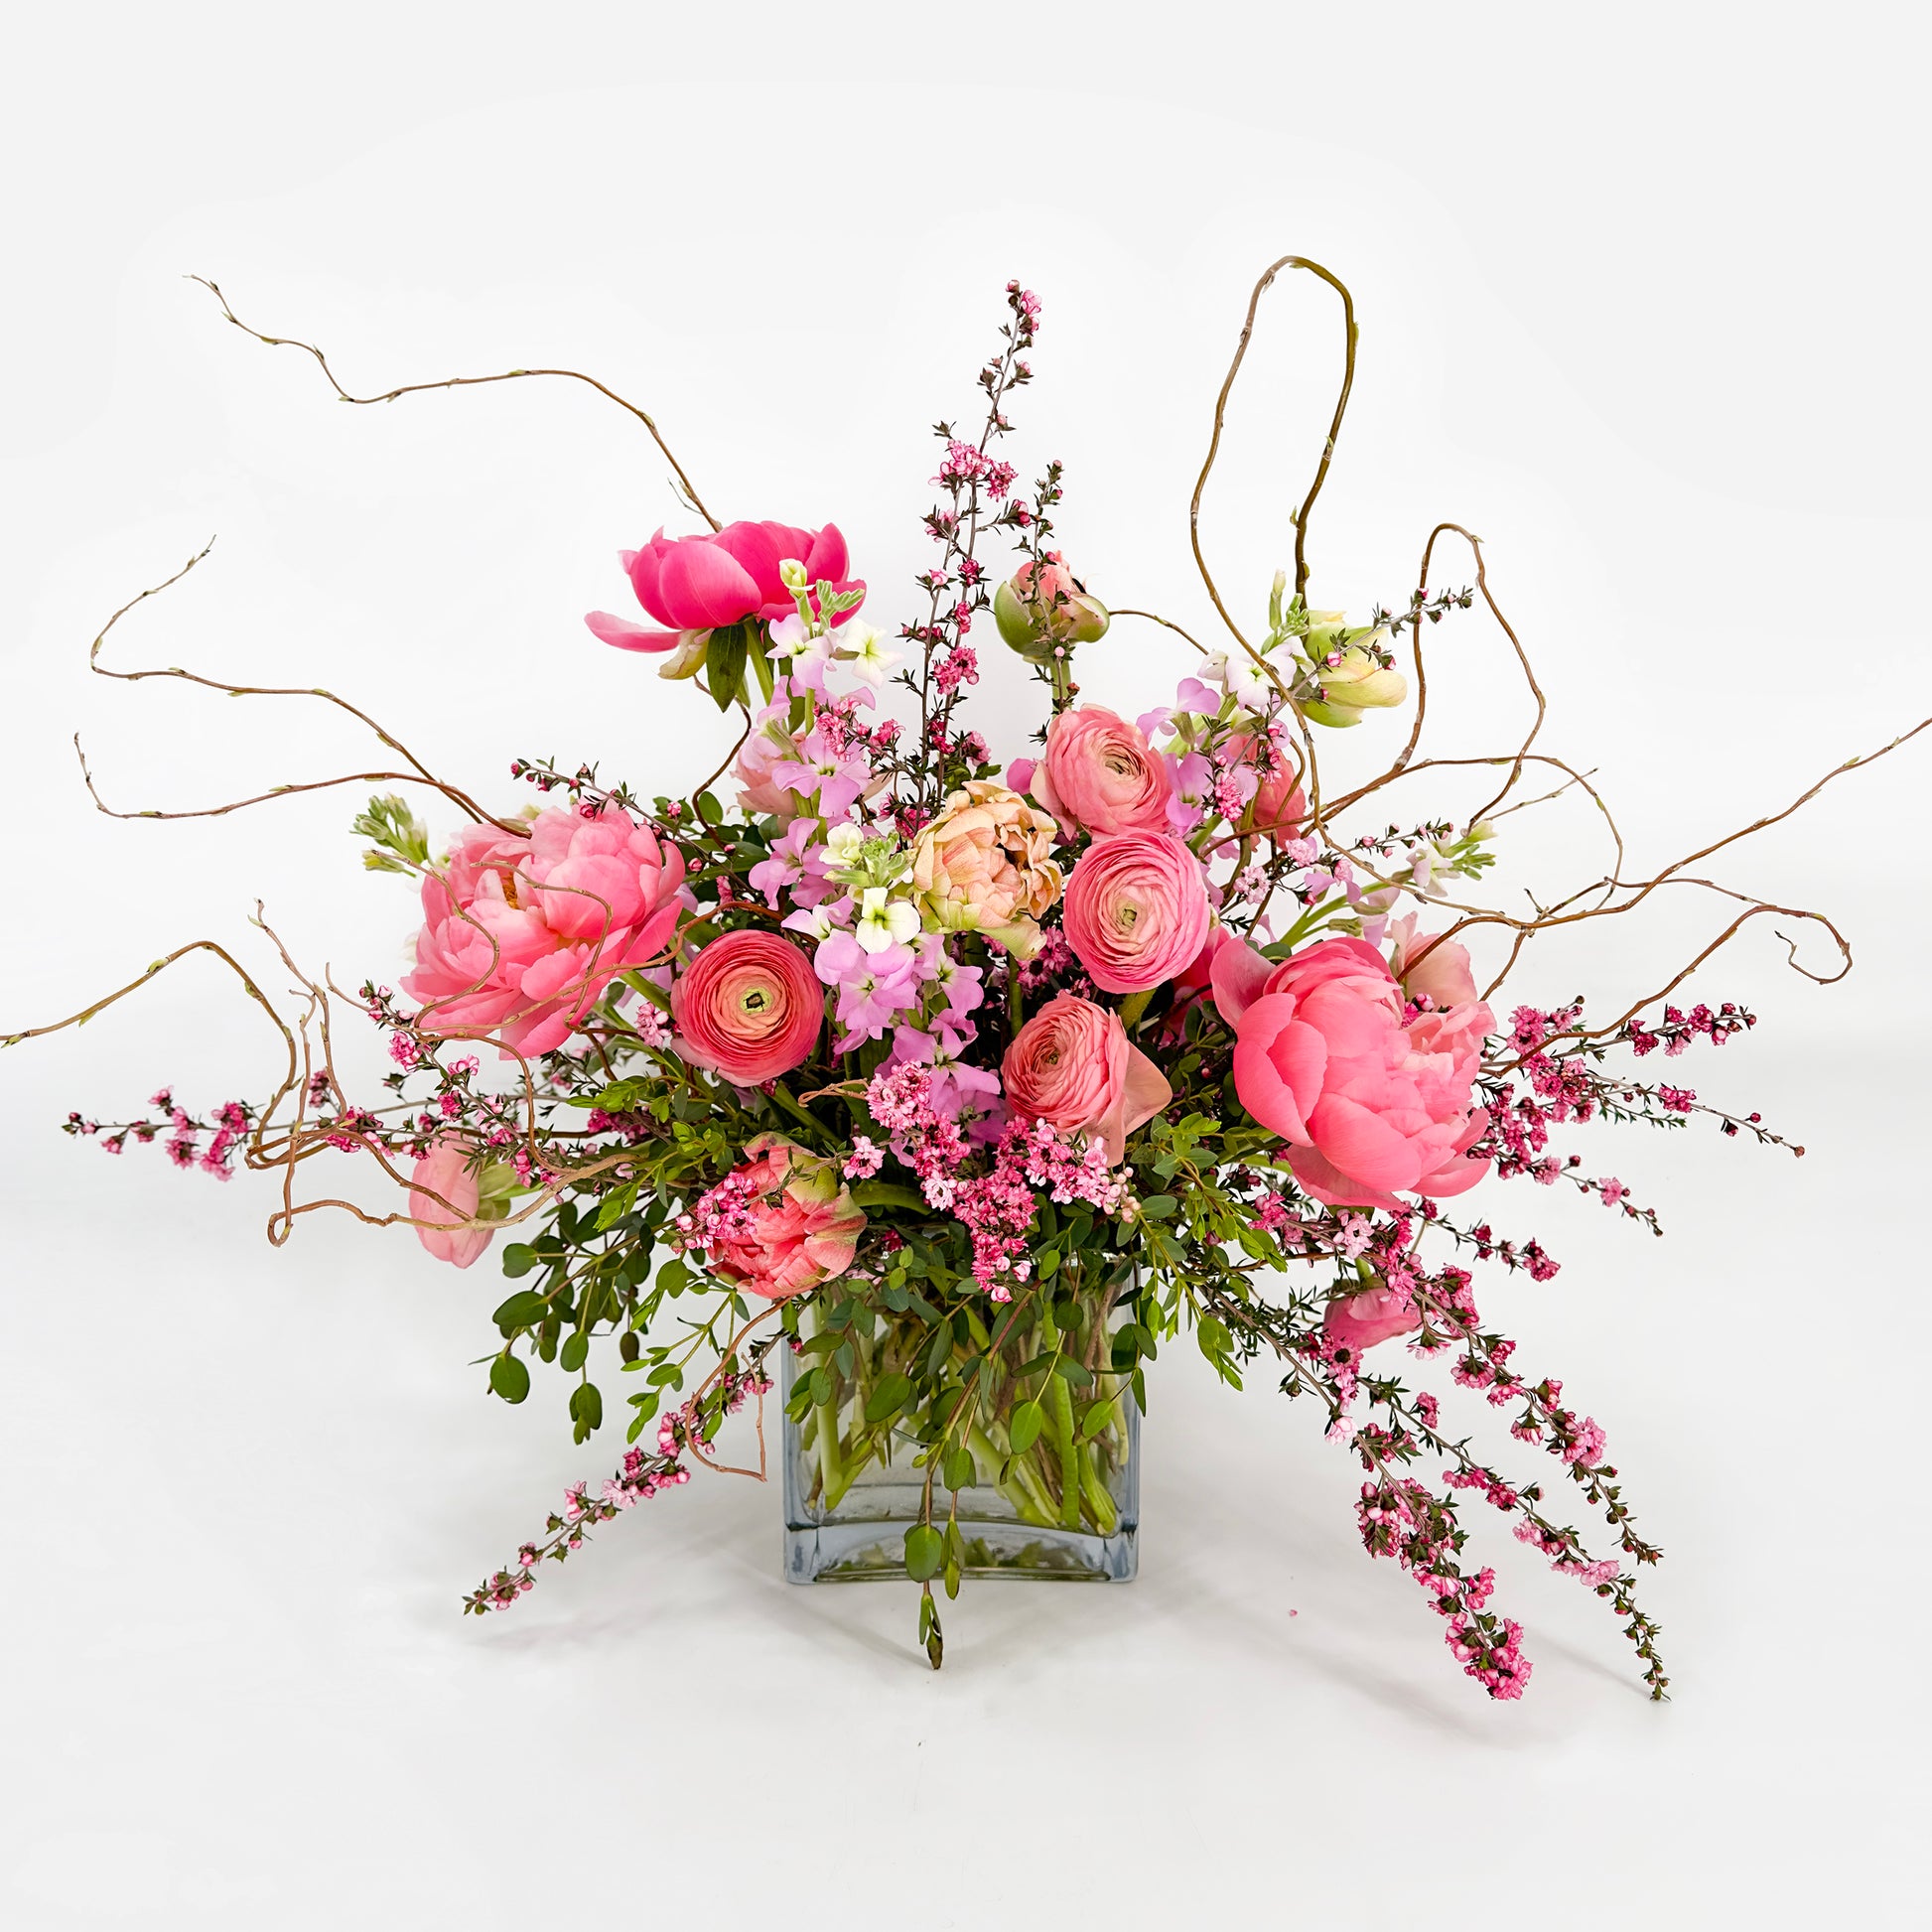 Flower arrangement - large. Order online for delivery or pickup in Santa Fe